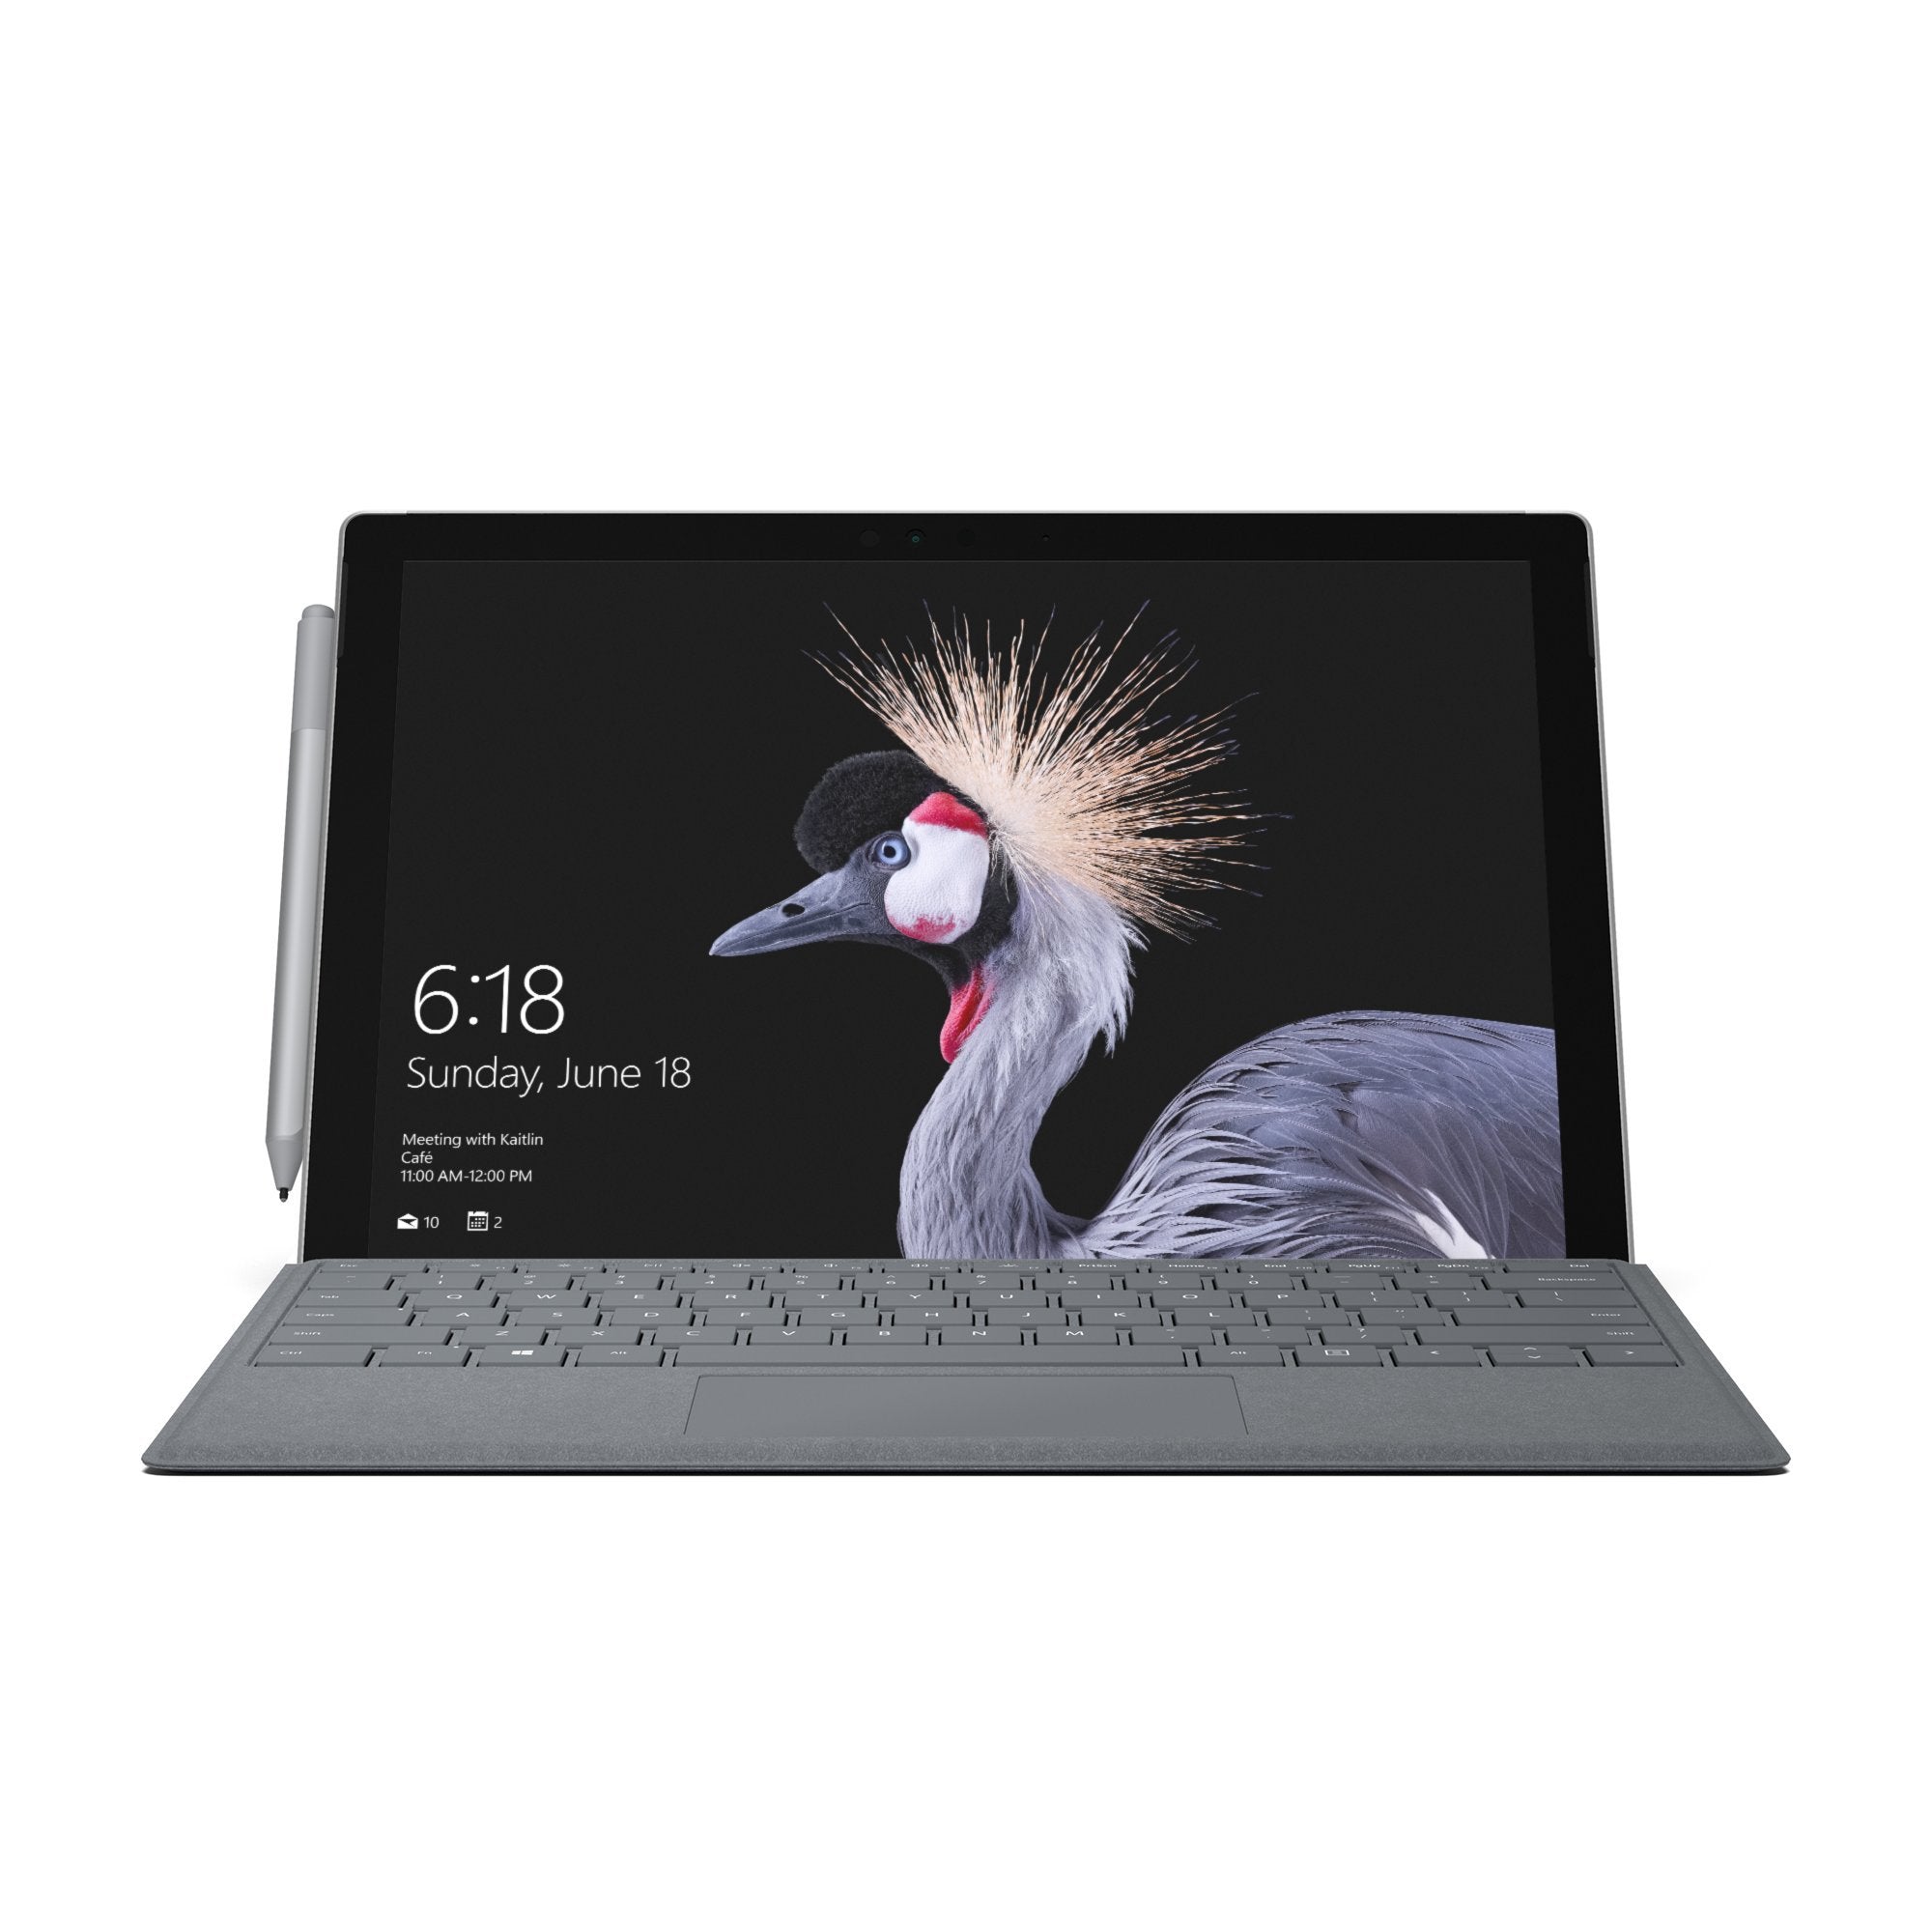 Microsoft Surface Pro Signature Type Cover - Platinum